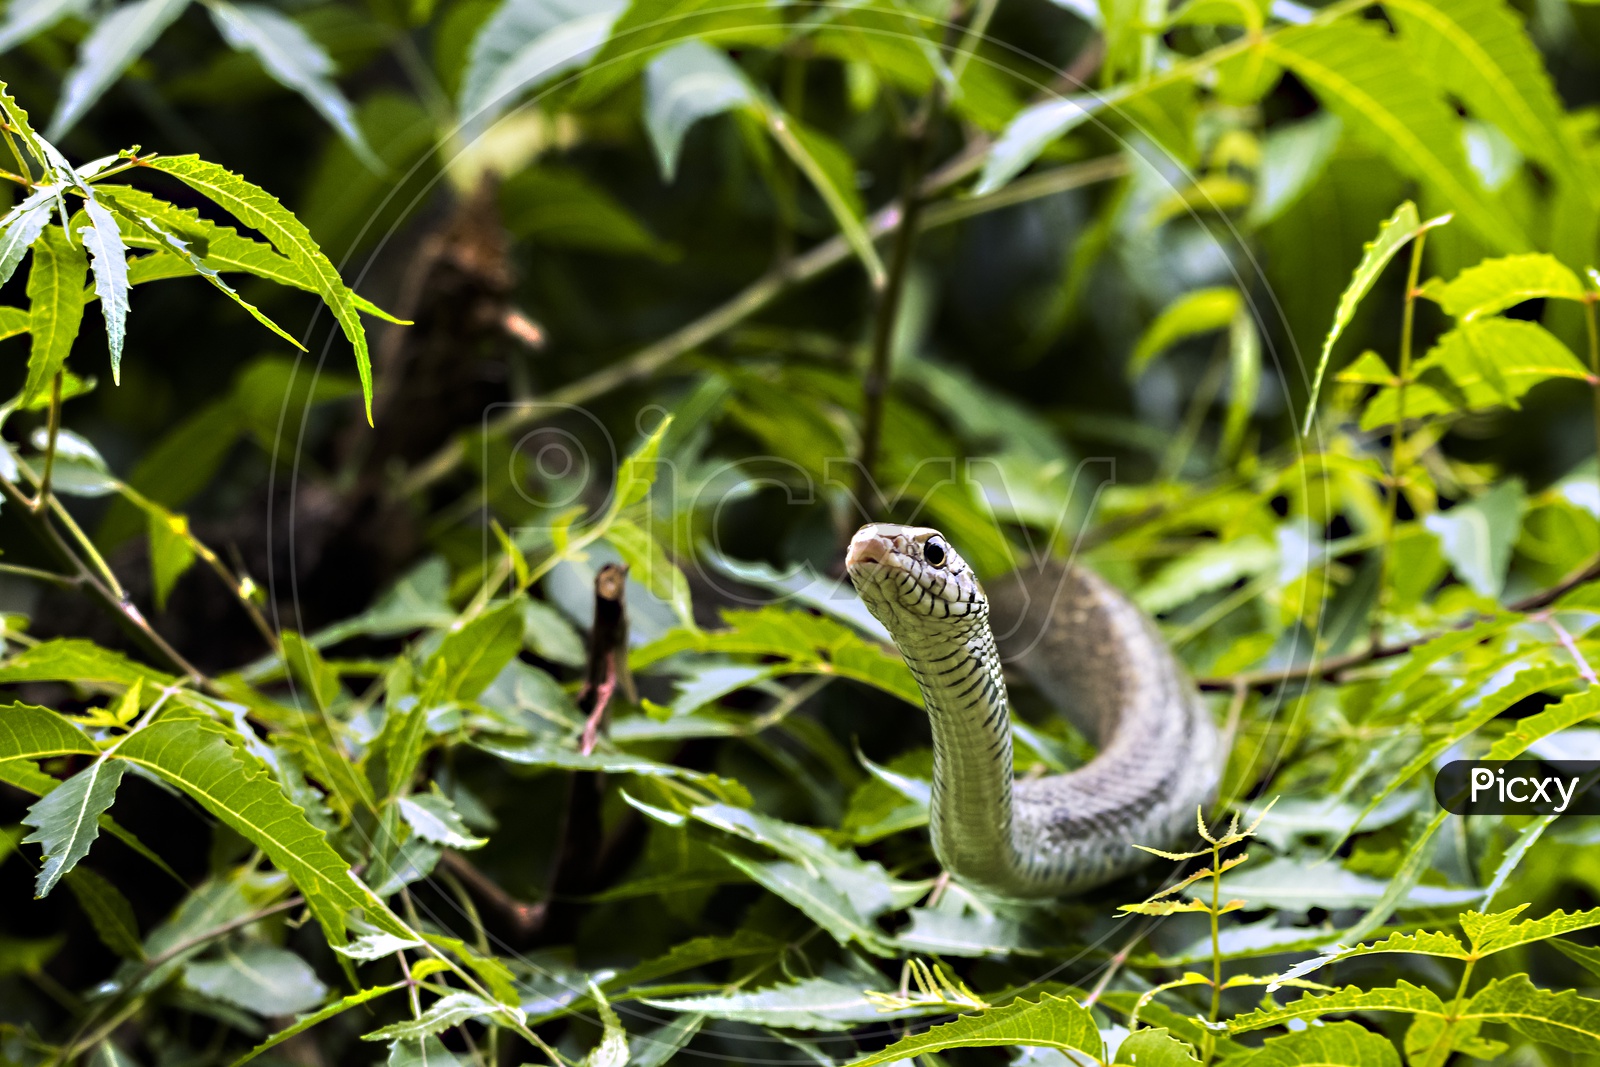 Closeup of Indian python